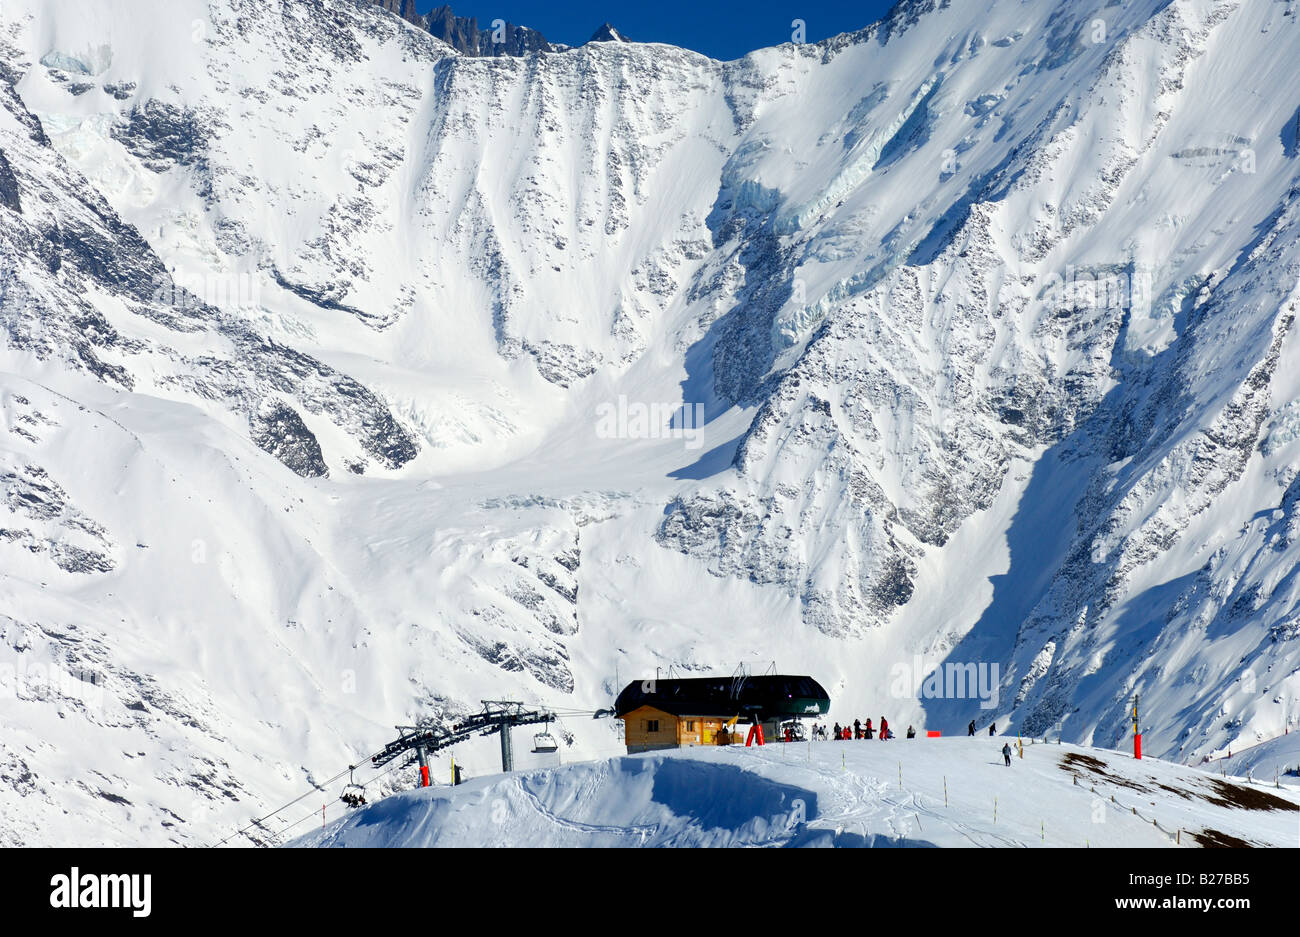 Station de ski Saint Gervais au pied du massif du Mont Blanc, St Gervais, Haute Savoie, France Banque D'Images